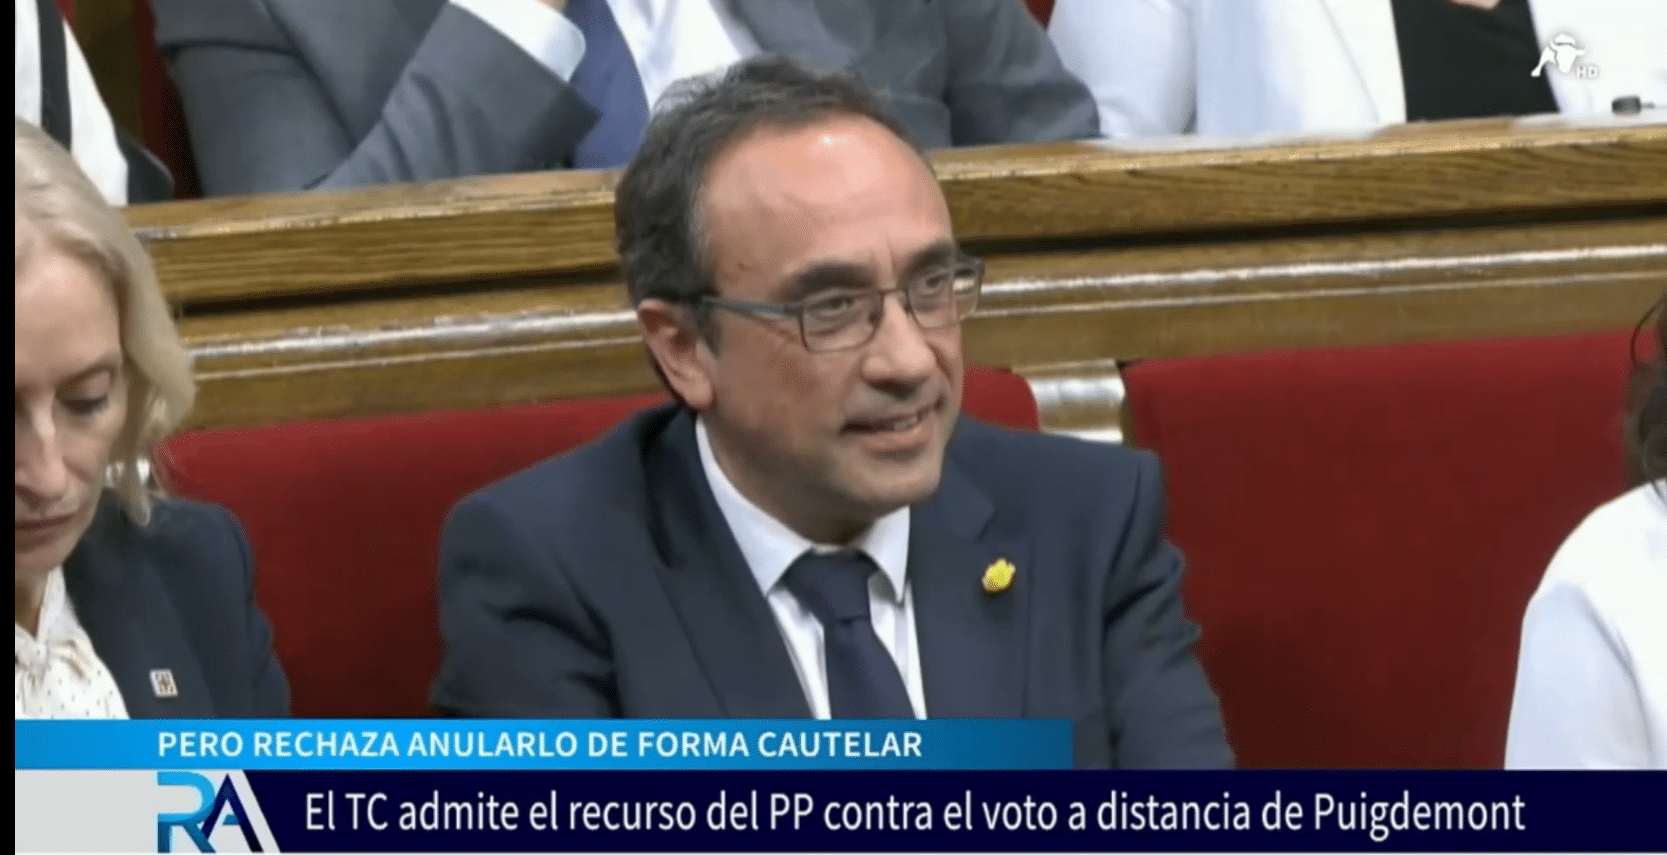 El Constitucional rechaza anular el voto a distancia de Puigdemont de forma cautelar